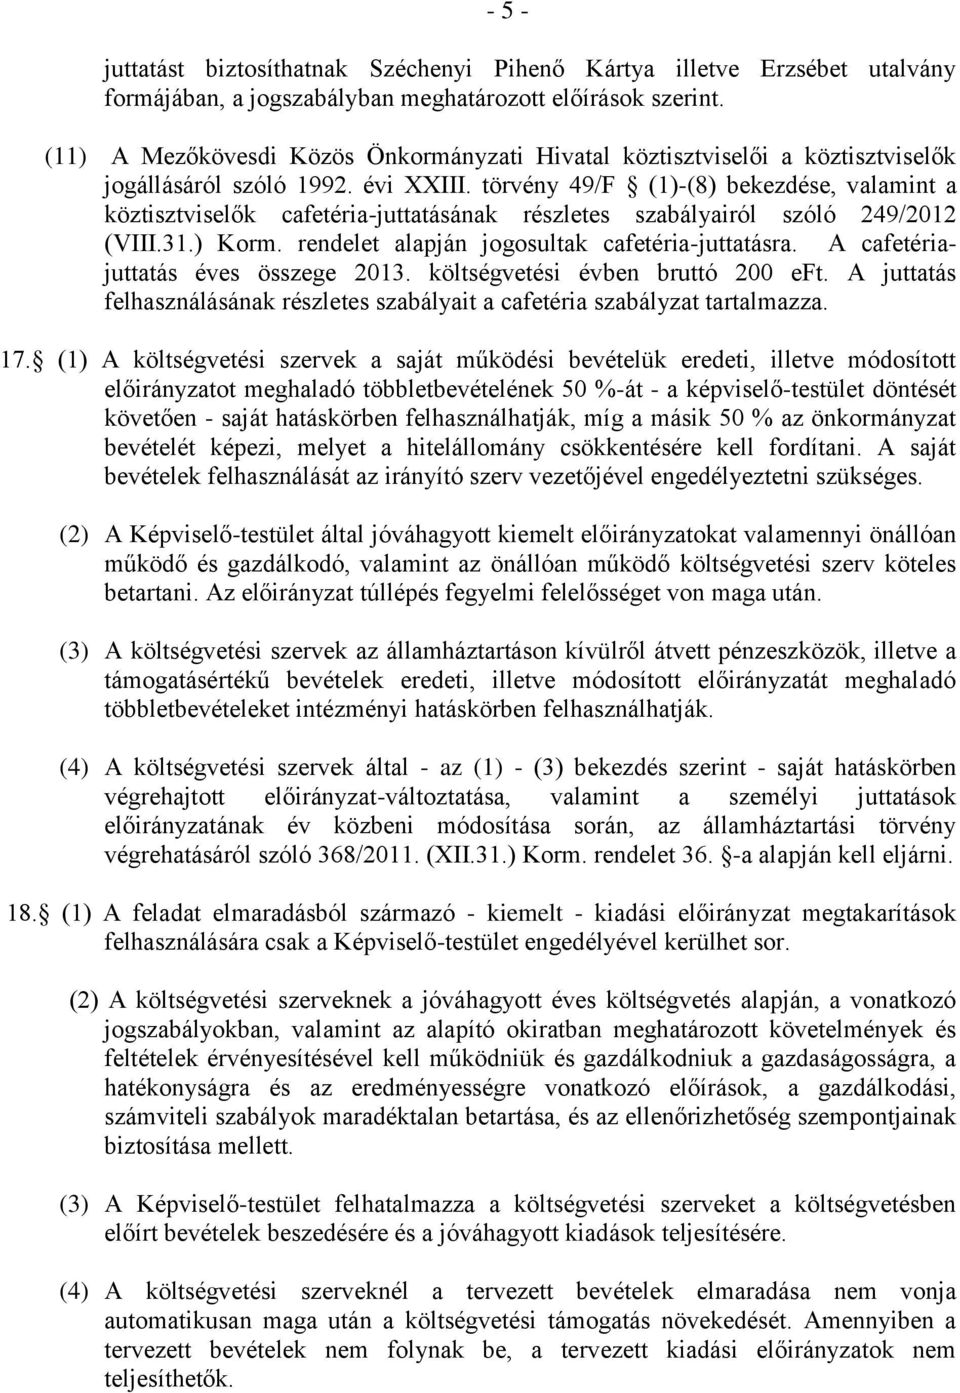 törvény 49/F (1)-(8) bekezdése, valamint a köztisztviselők cafetéria-juttatásának részletes szabályairól szóló 249/2012 (VIII.31.) Korm. rendelet alapján jogosultak cafetéria-juttatásra.